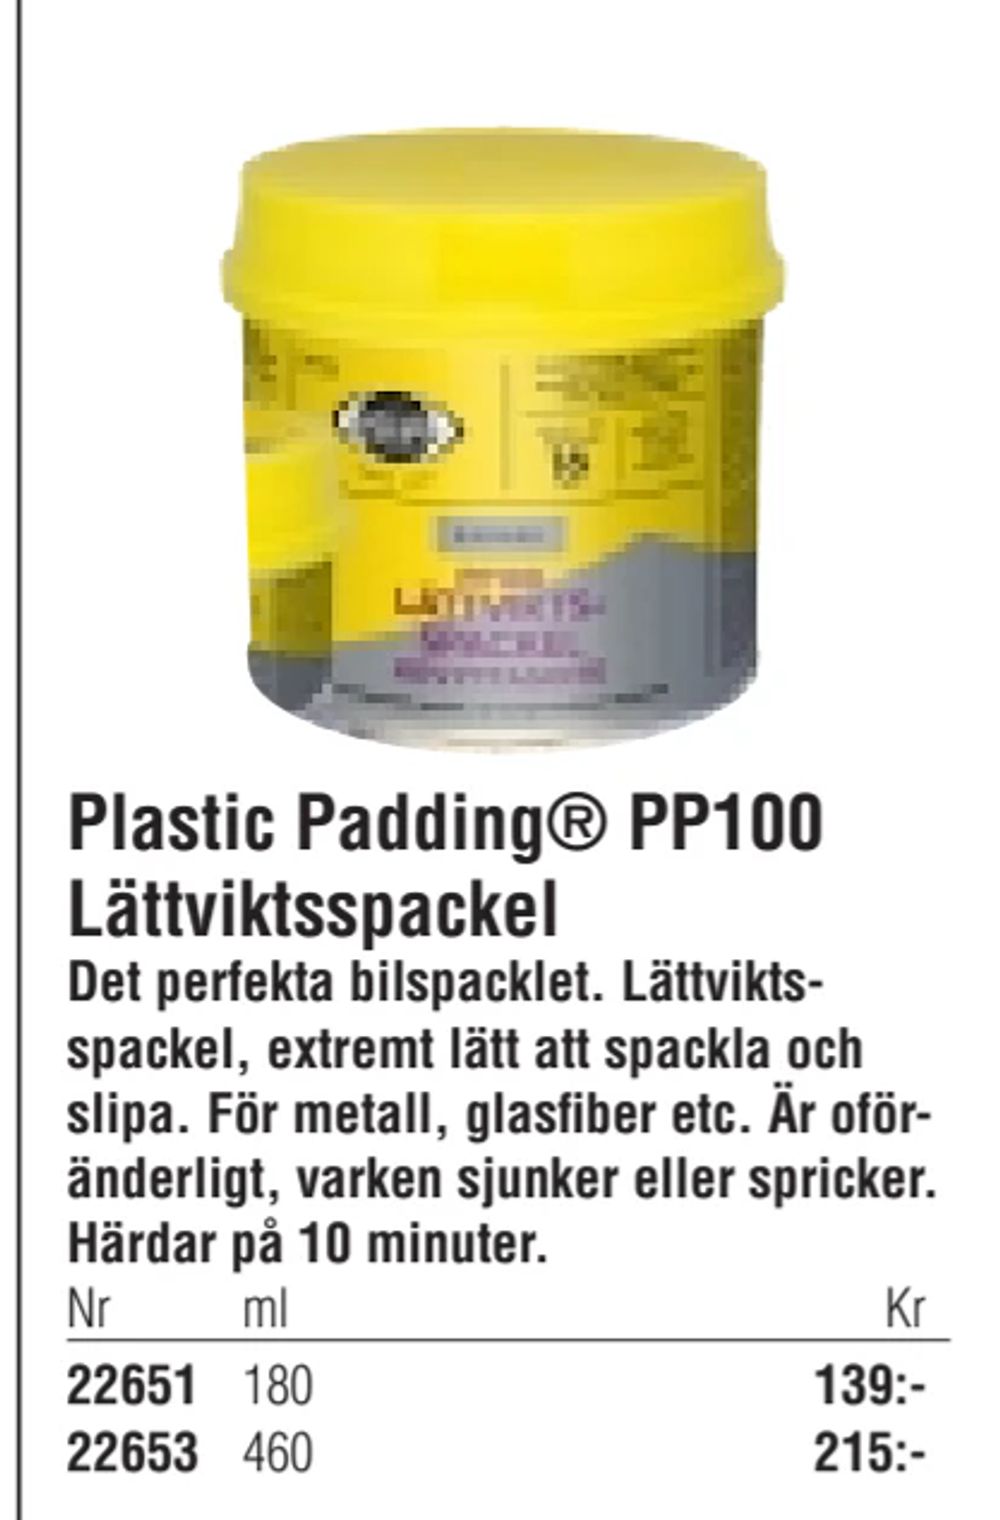 Erbjudanden på Plastic Padding® PP100 Lättviktsspackel från Erlandsons Brygga för 139 kr